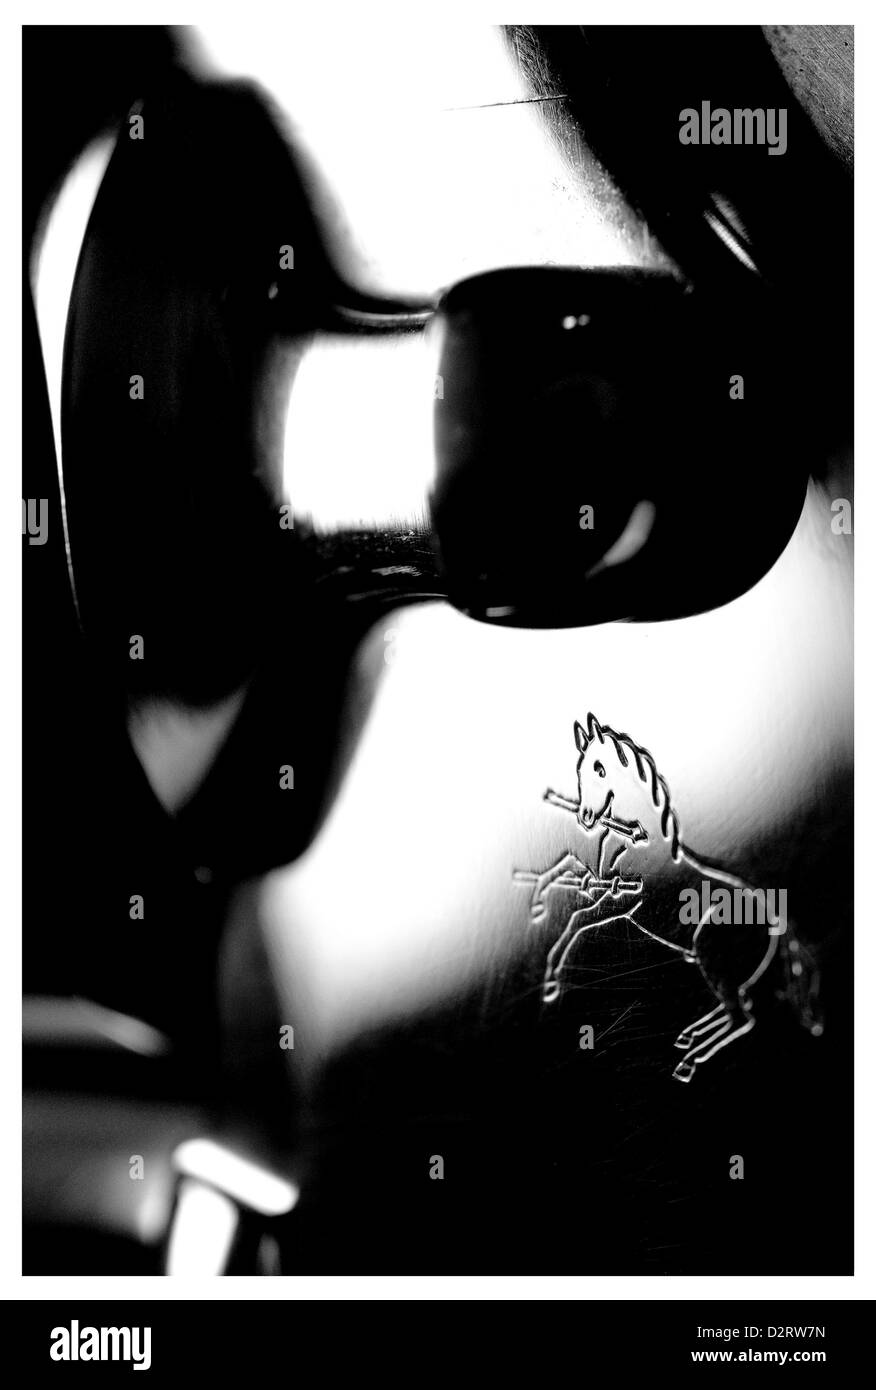 2 juin 2007 - Jan 31, 2013 - San Jose, Californie, USA - Close-up d'un Colt Python ''Snake Eyes'' Limited Edition .357 Magnum inox brillant snubby revolver arme à la main. (Crédit Image : © Jérôme Brunet/ZUMAPRESS.com) Banque D'Images